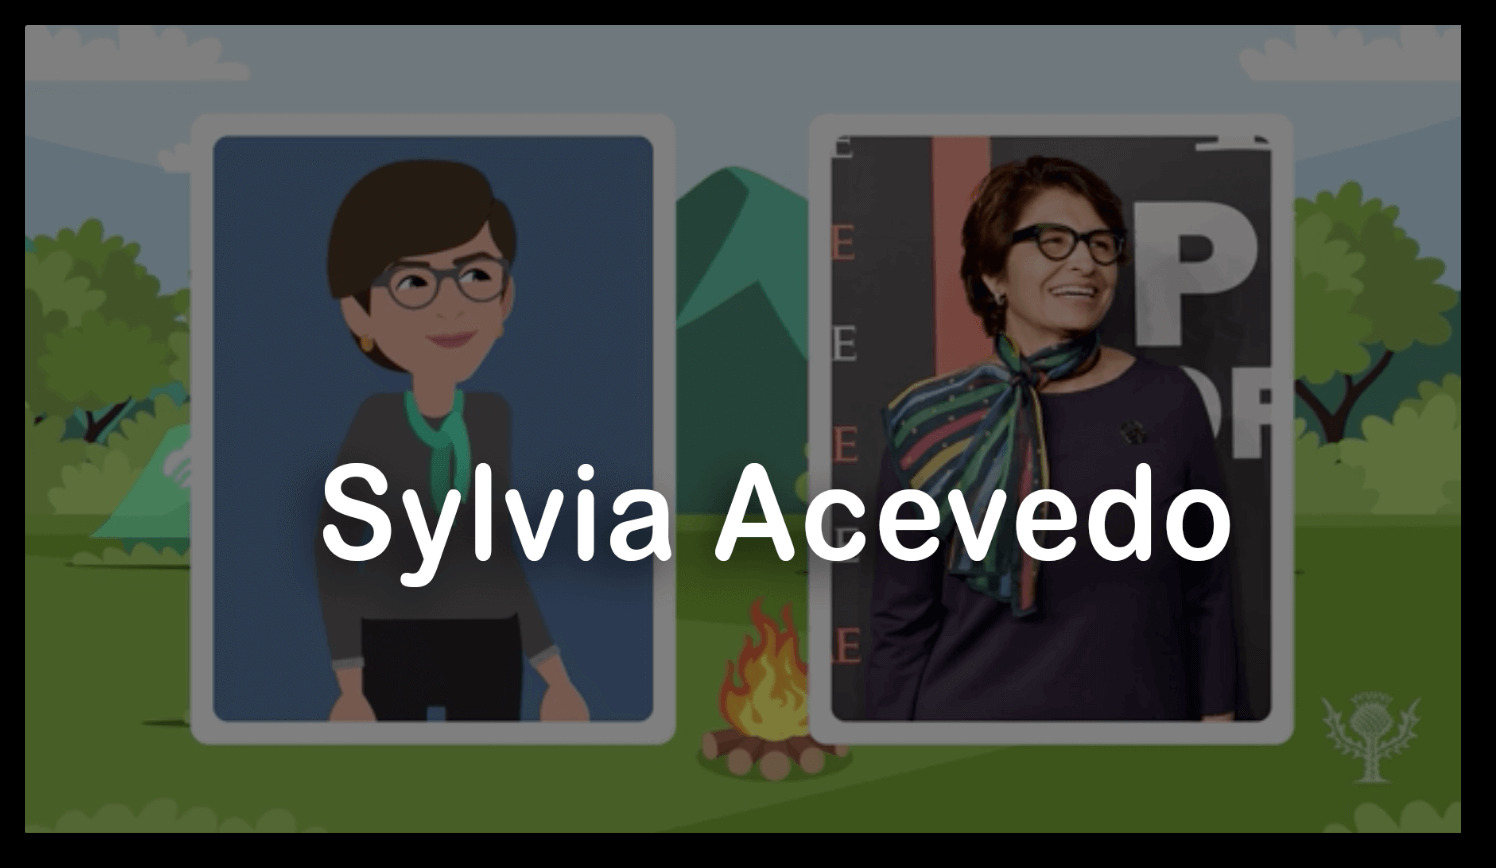 Sylvia-Acevedo-shadow